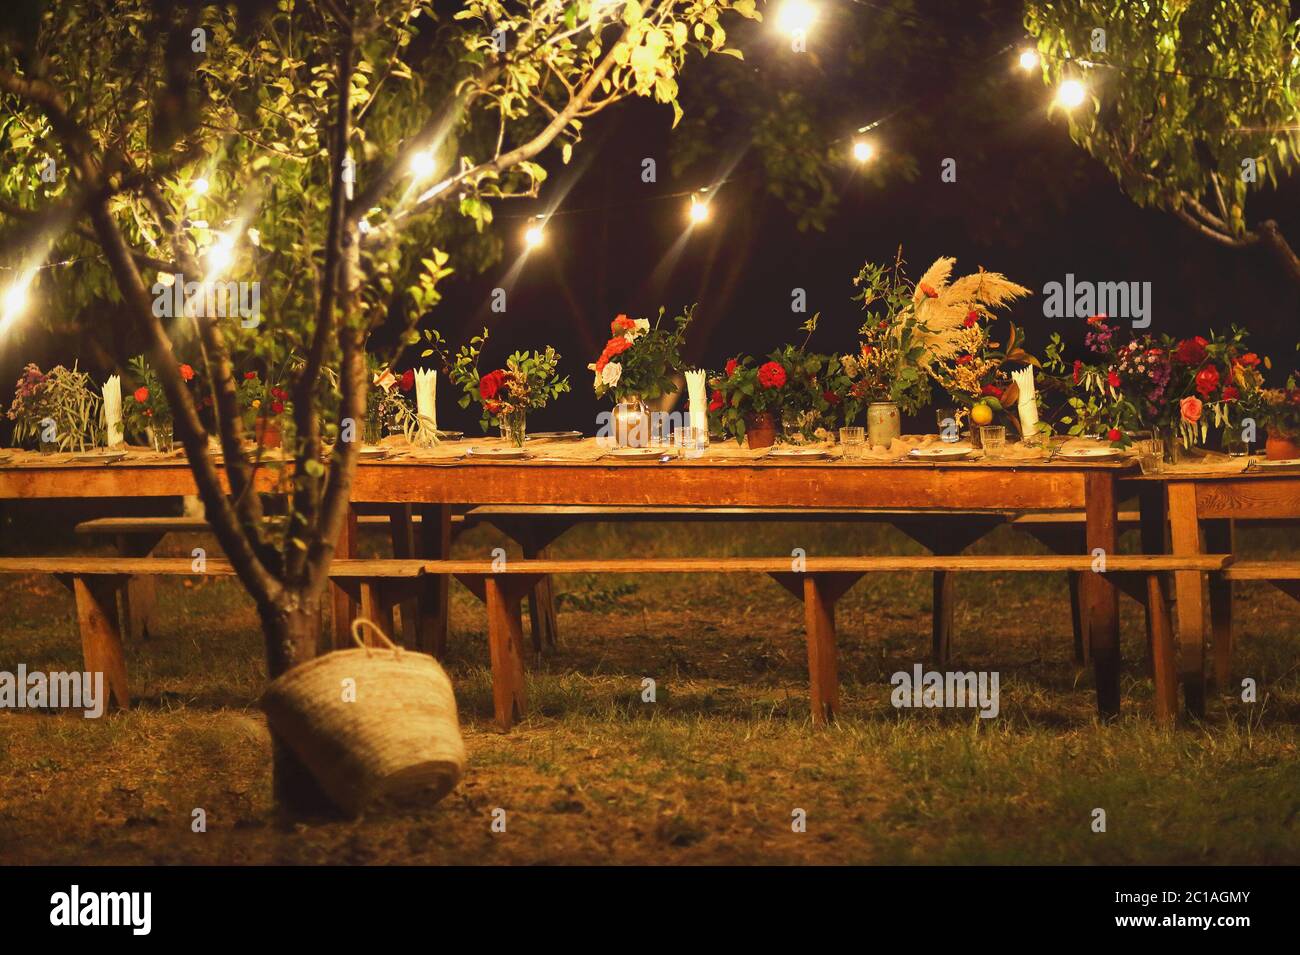 Tabella preparata per un rustico cena all'aperto durante la notte con wineglasses, fiori e lampade Foto Stock